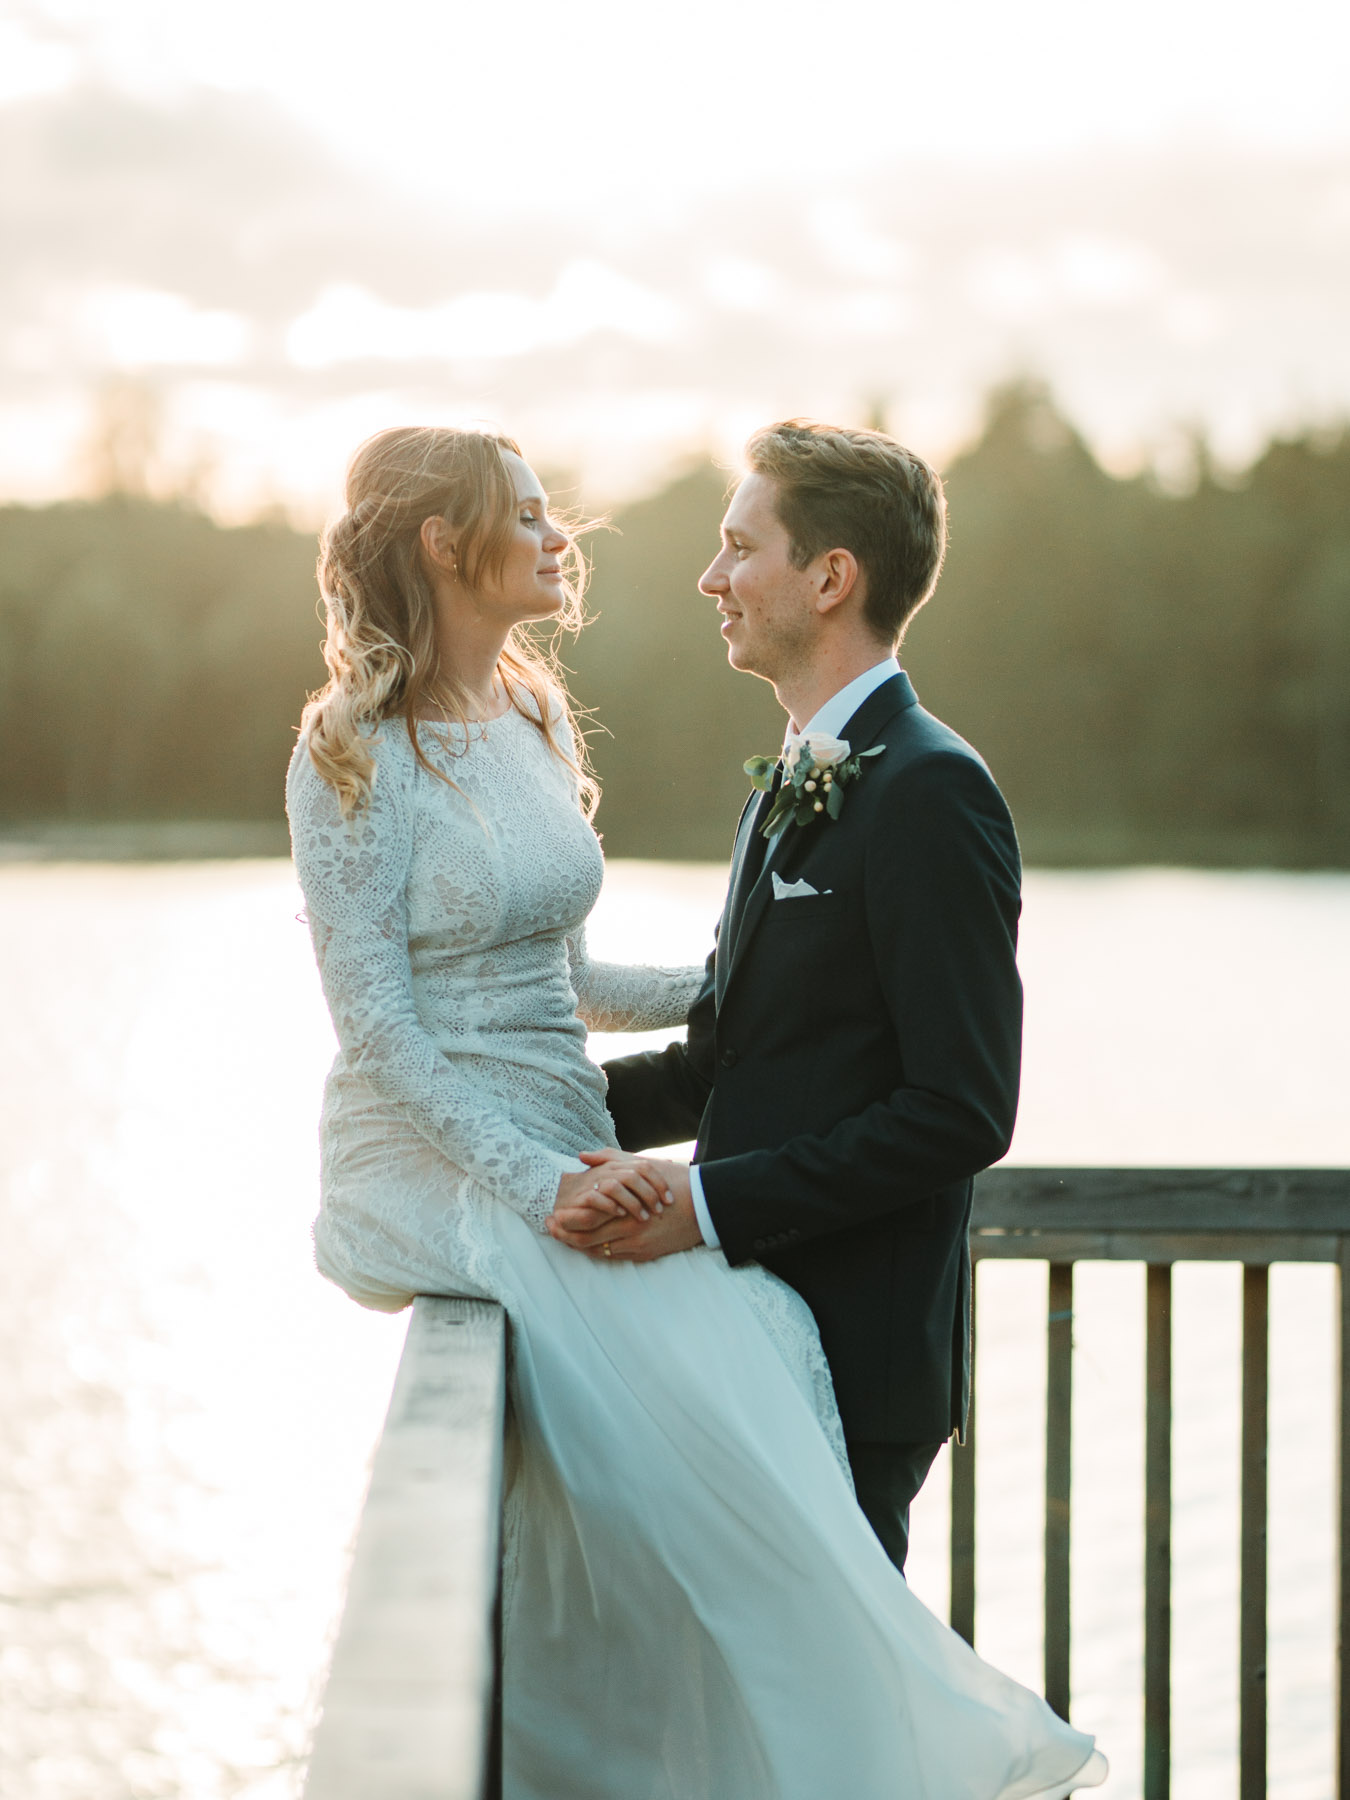 professional_wedding_photographer_gothenburg_sweden_matiss_neimans-18